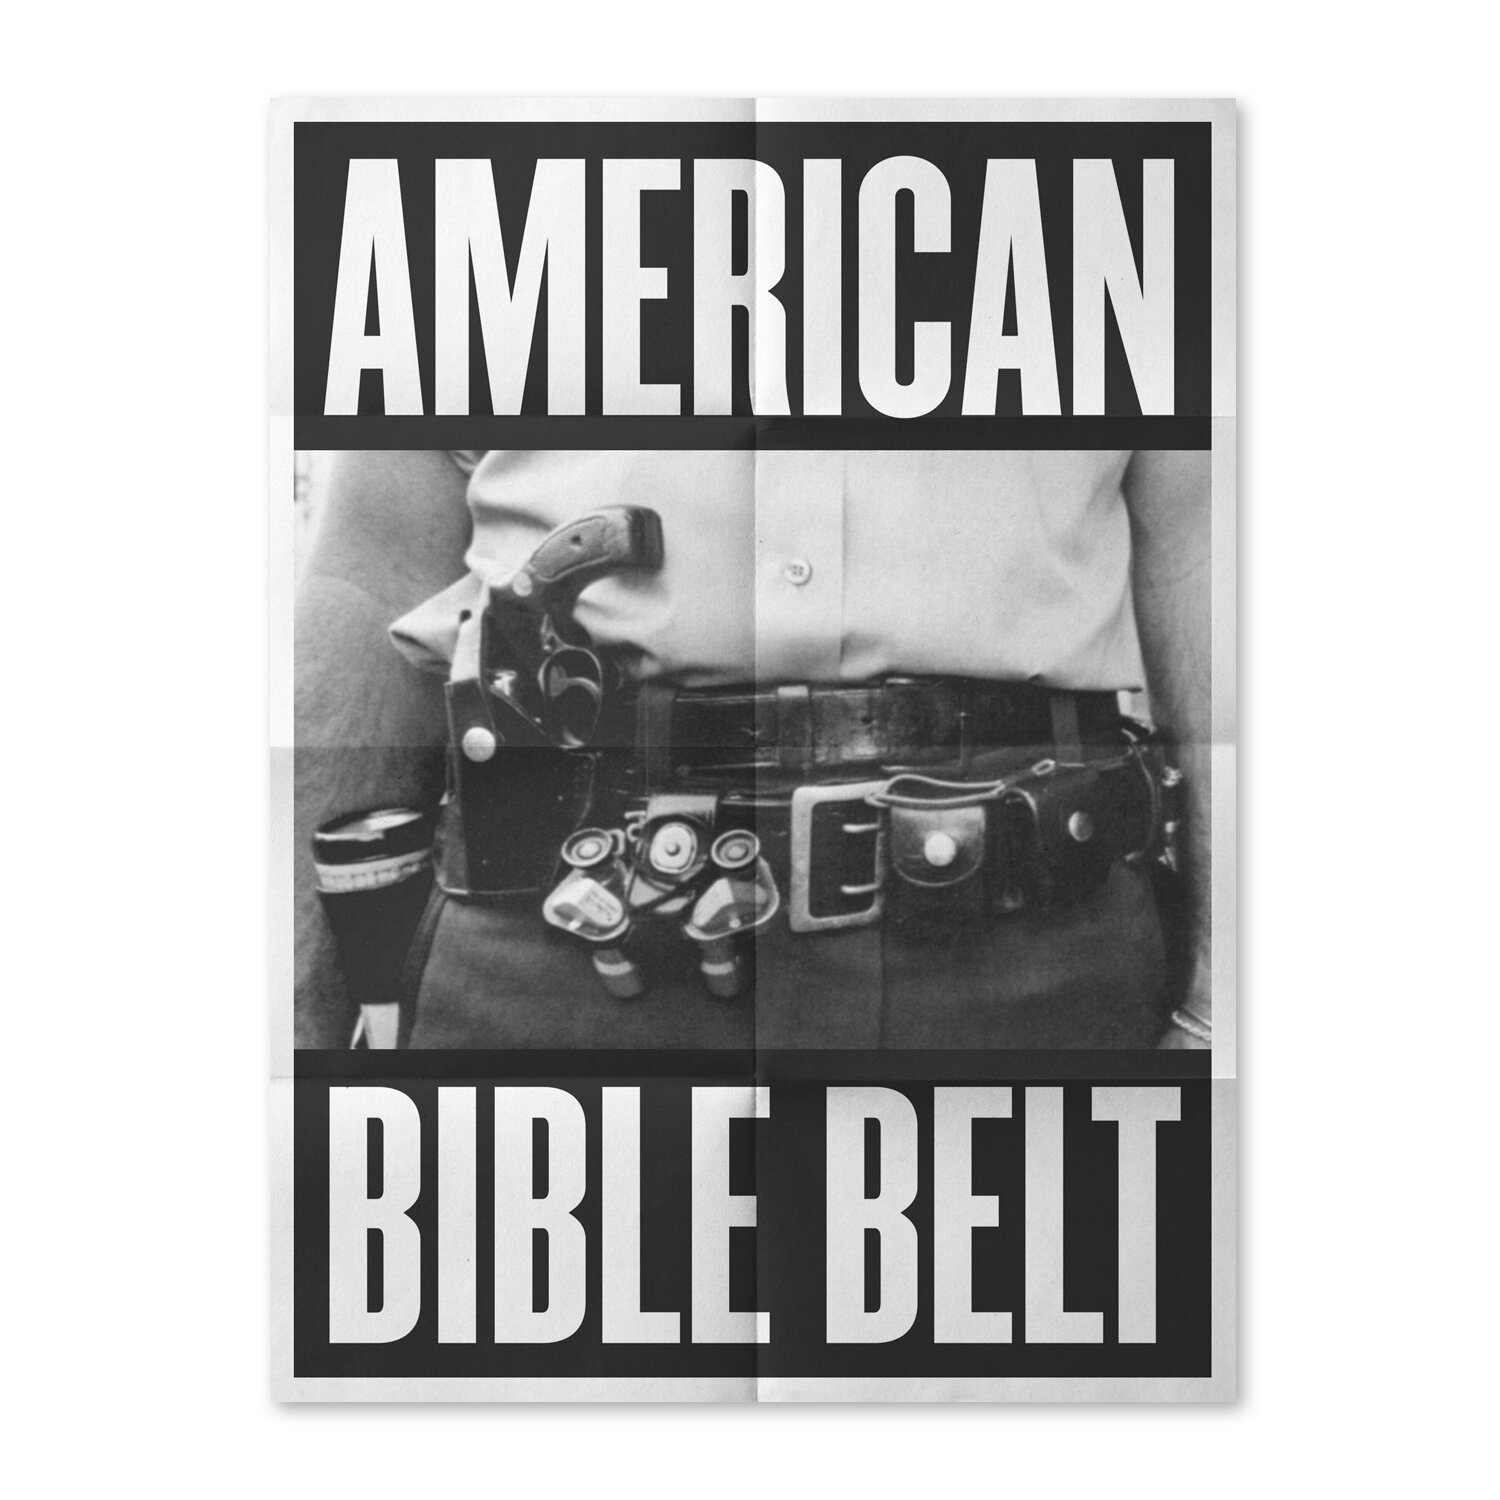 American_bible_belt_1.jpg